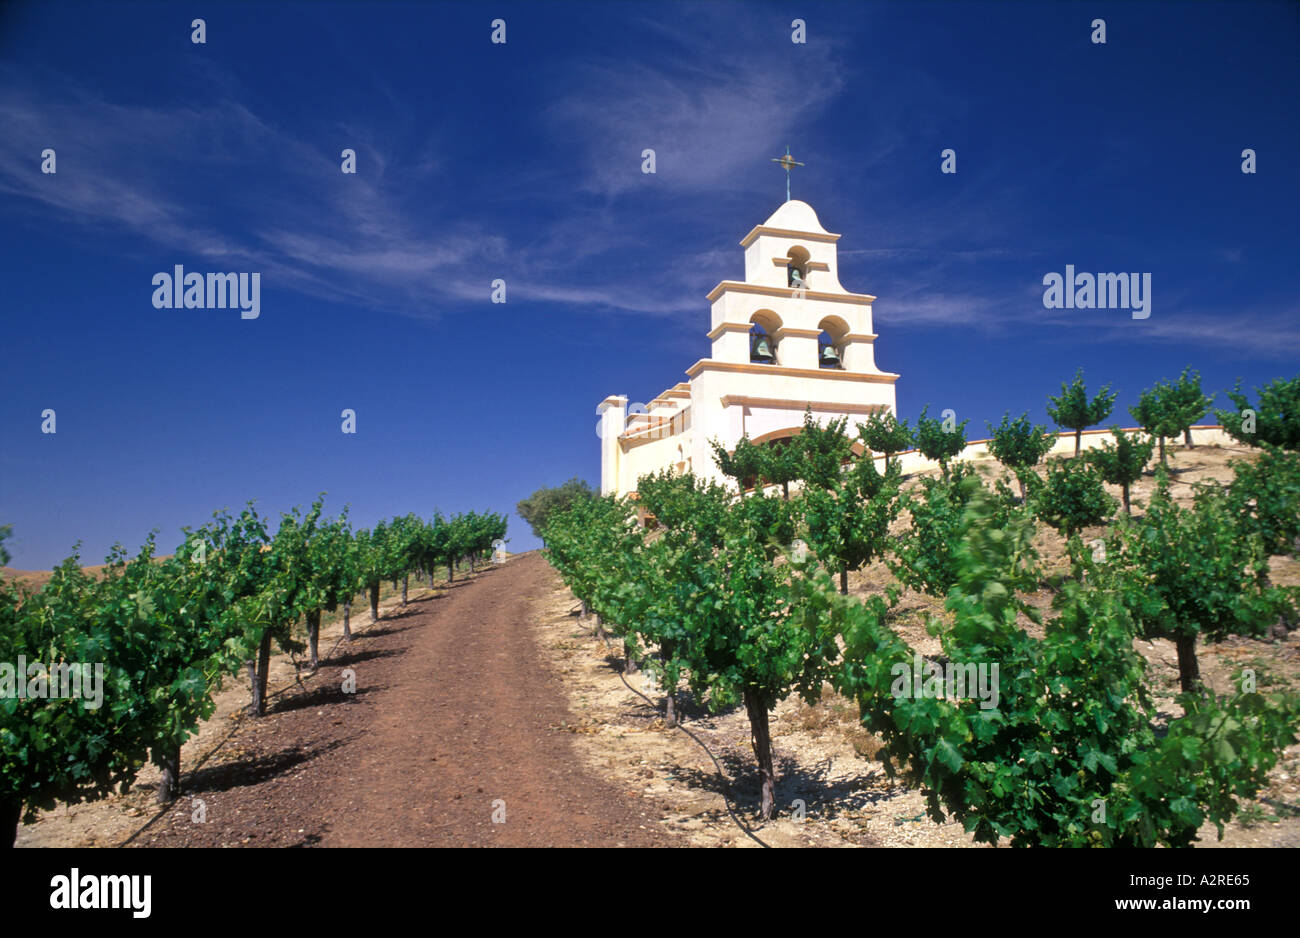 Stati Uniti d'America California Paso Robles chiesa sulla collina con vigneti di uve Foto Stock